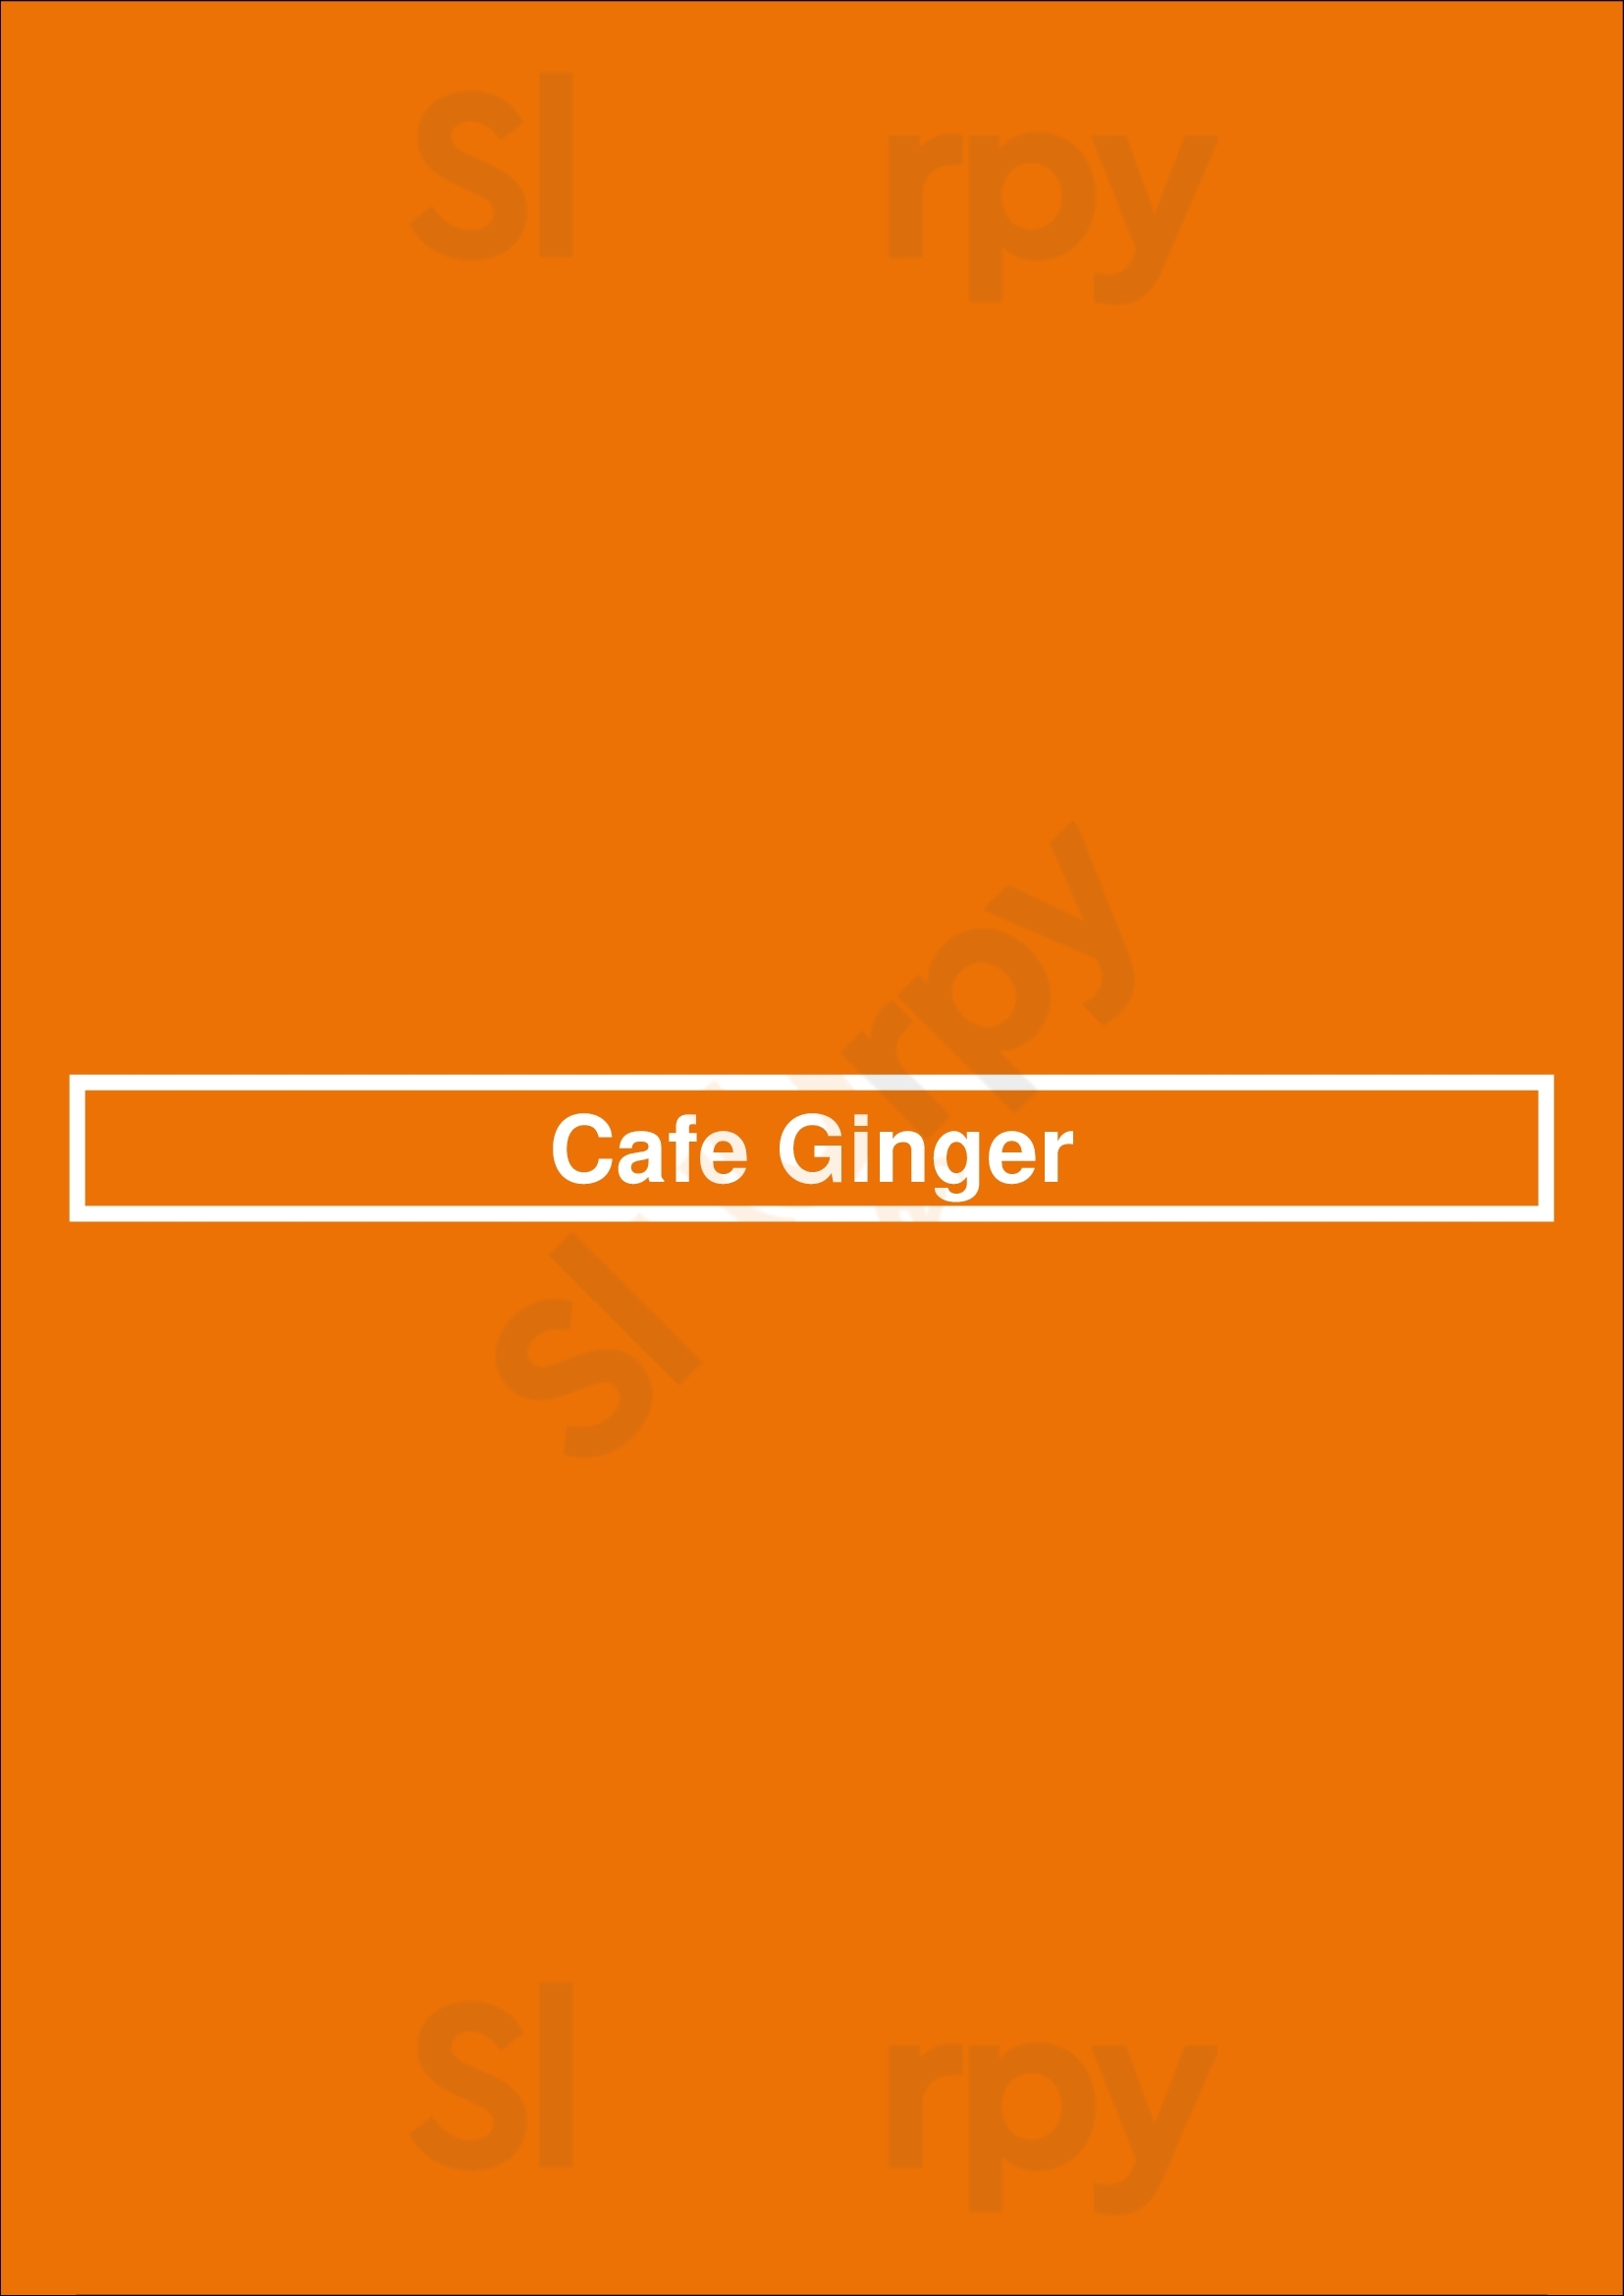 Cafe Ginger River Oak Houston Menu - 1